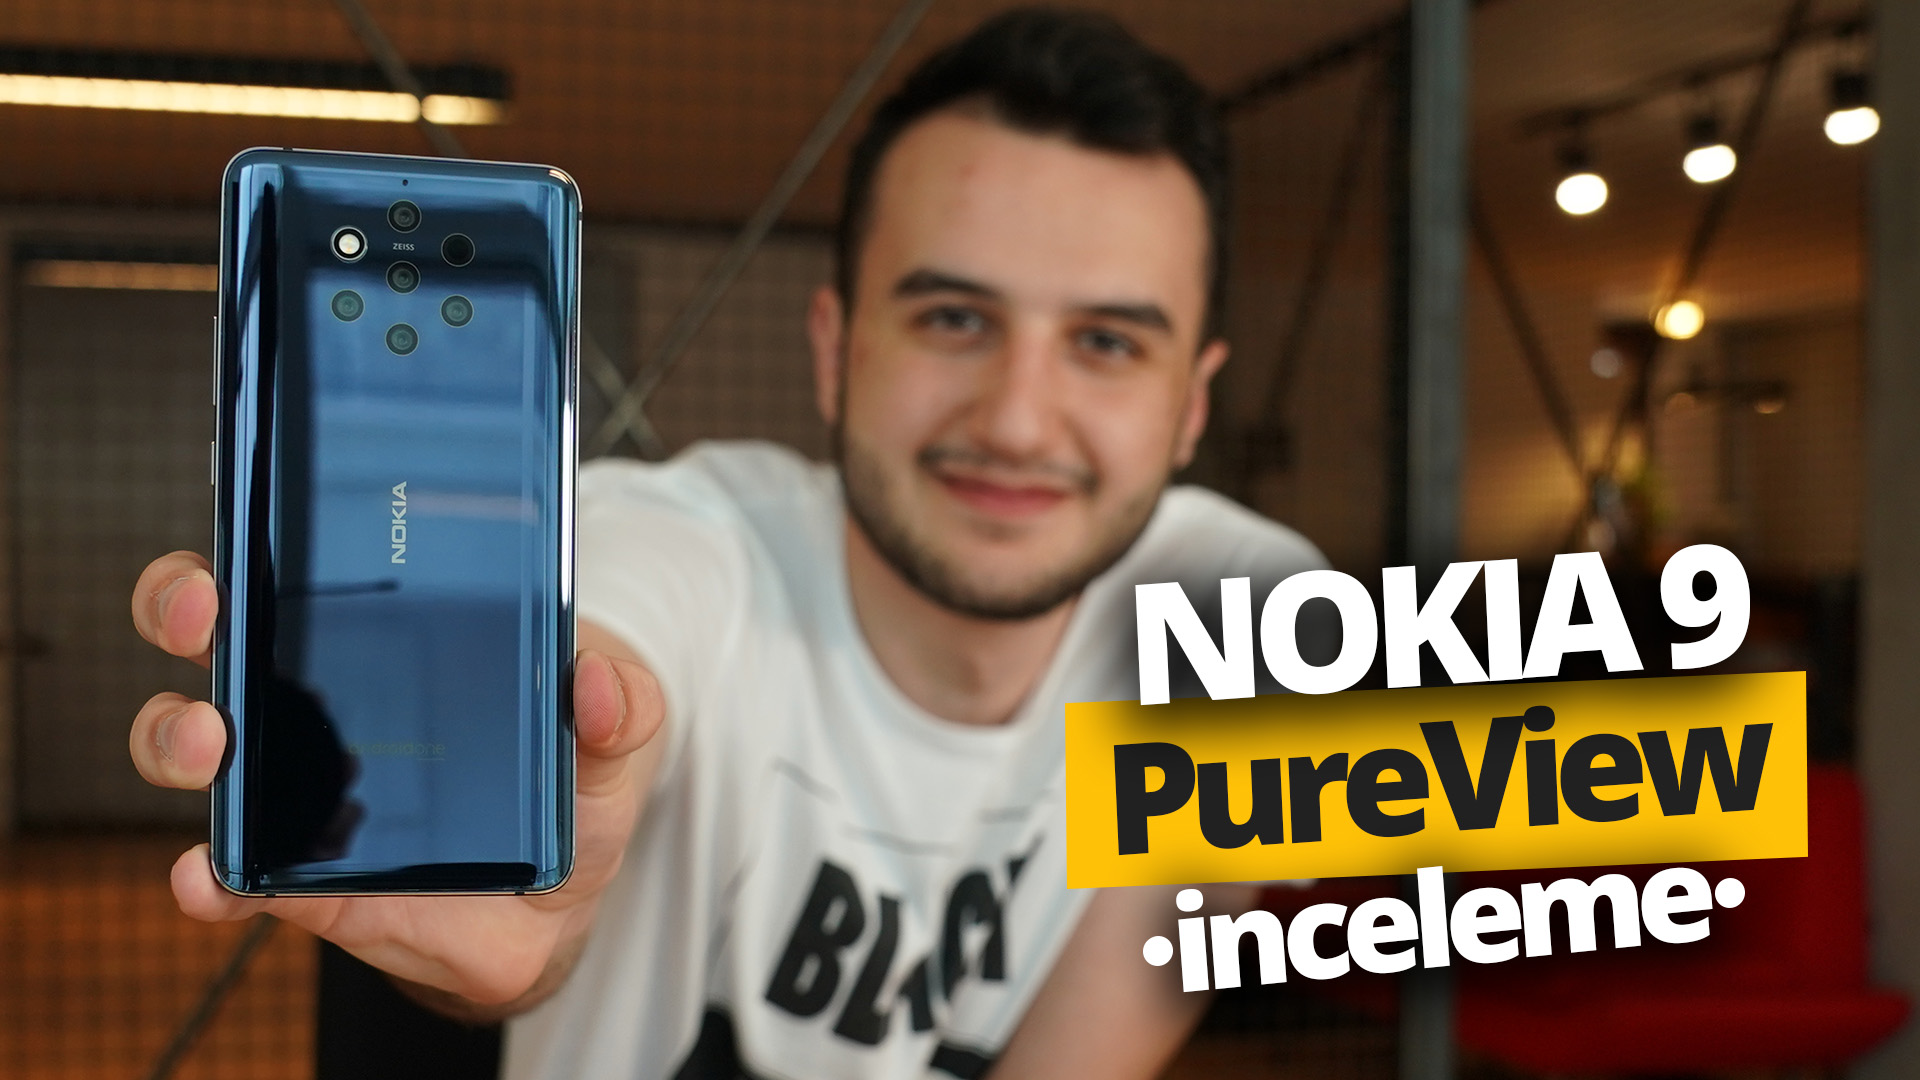 Nokia 9 PureView inceleme!